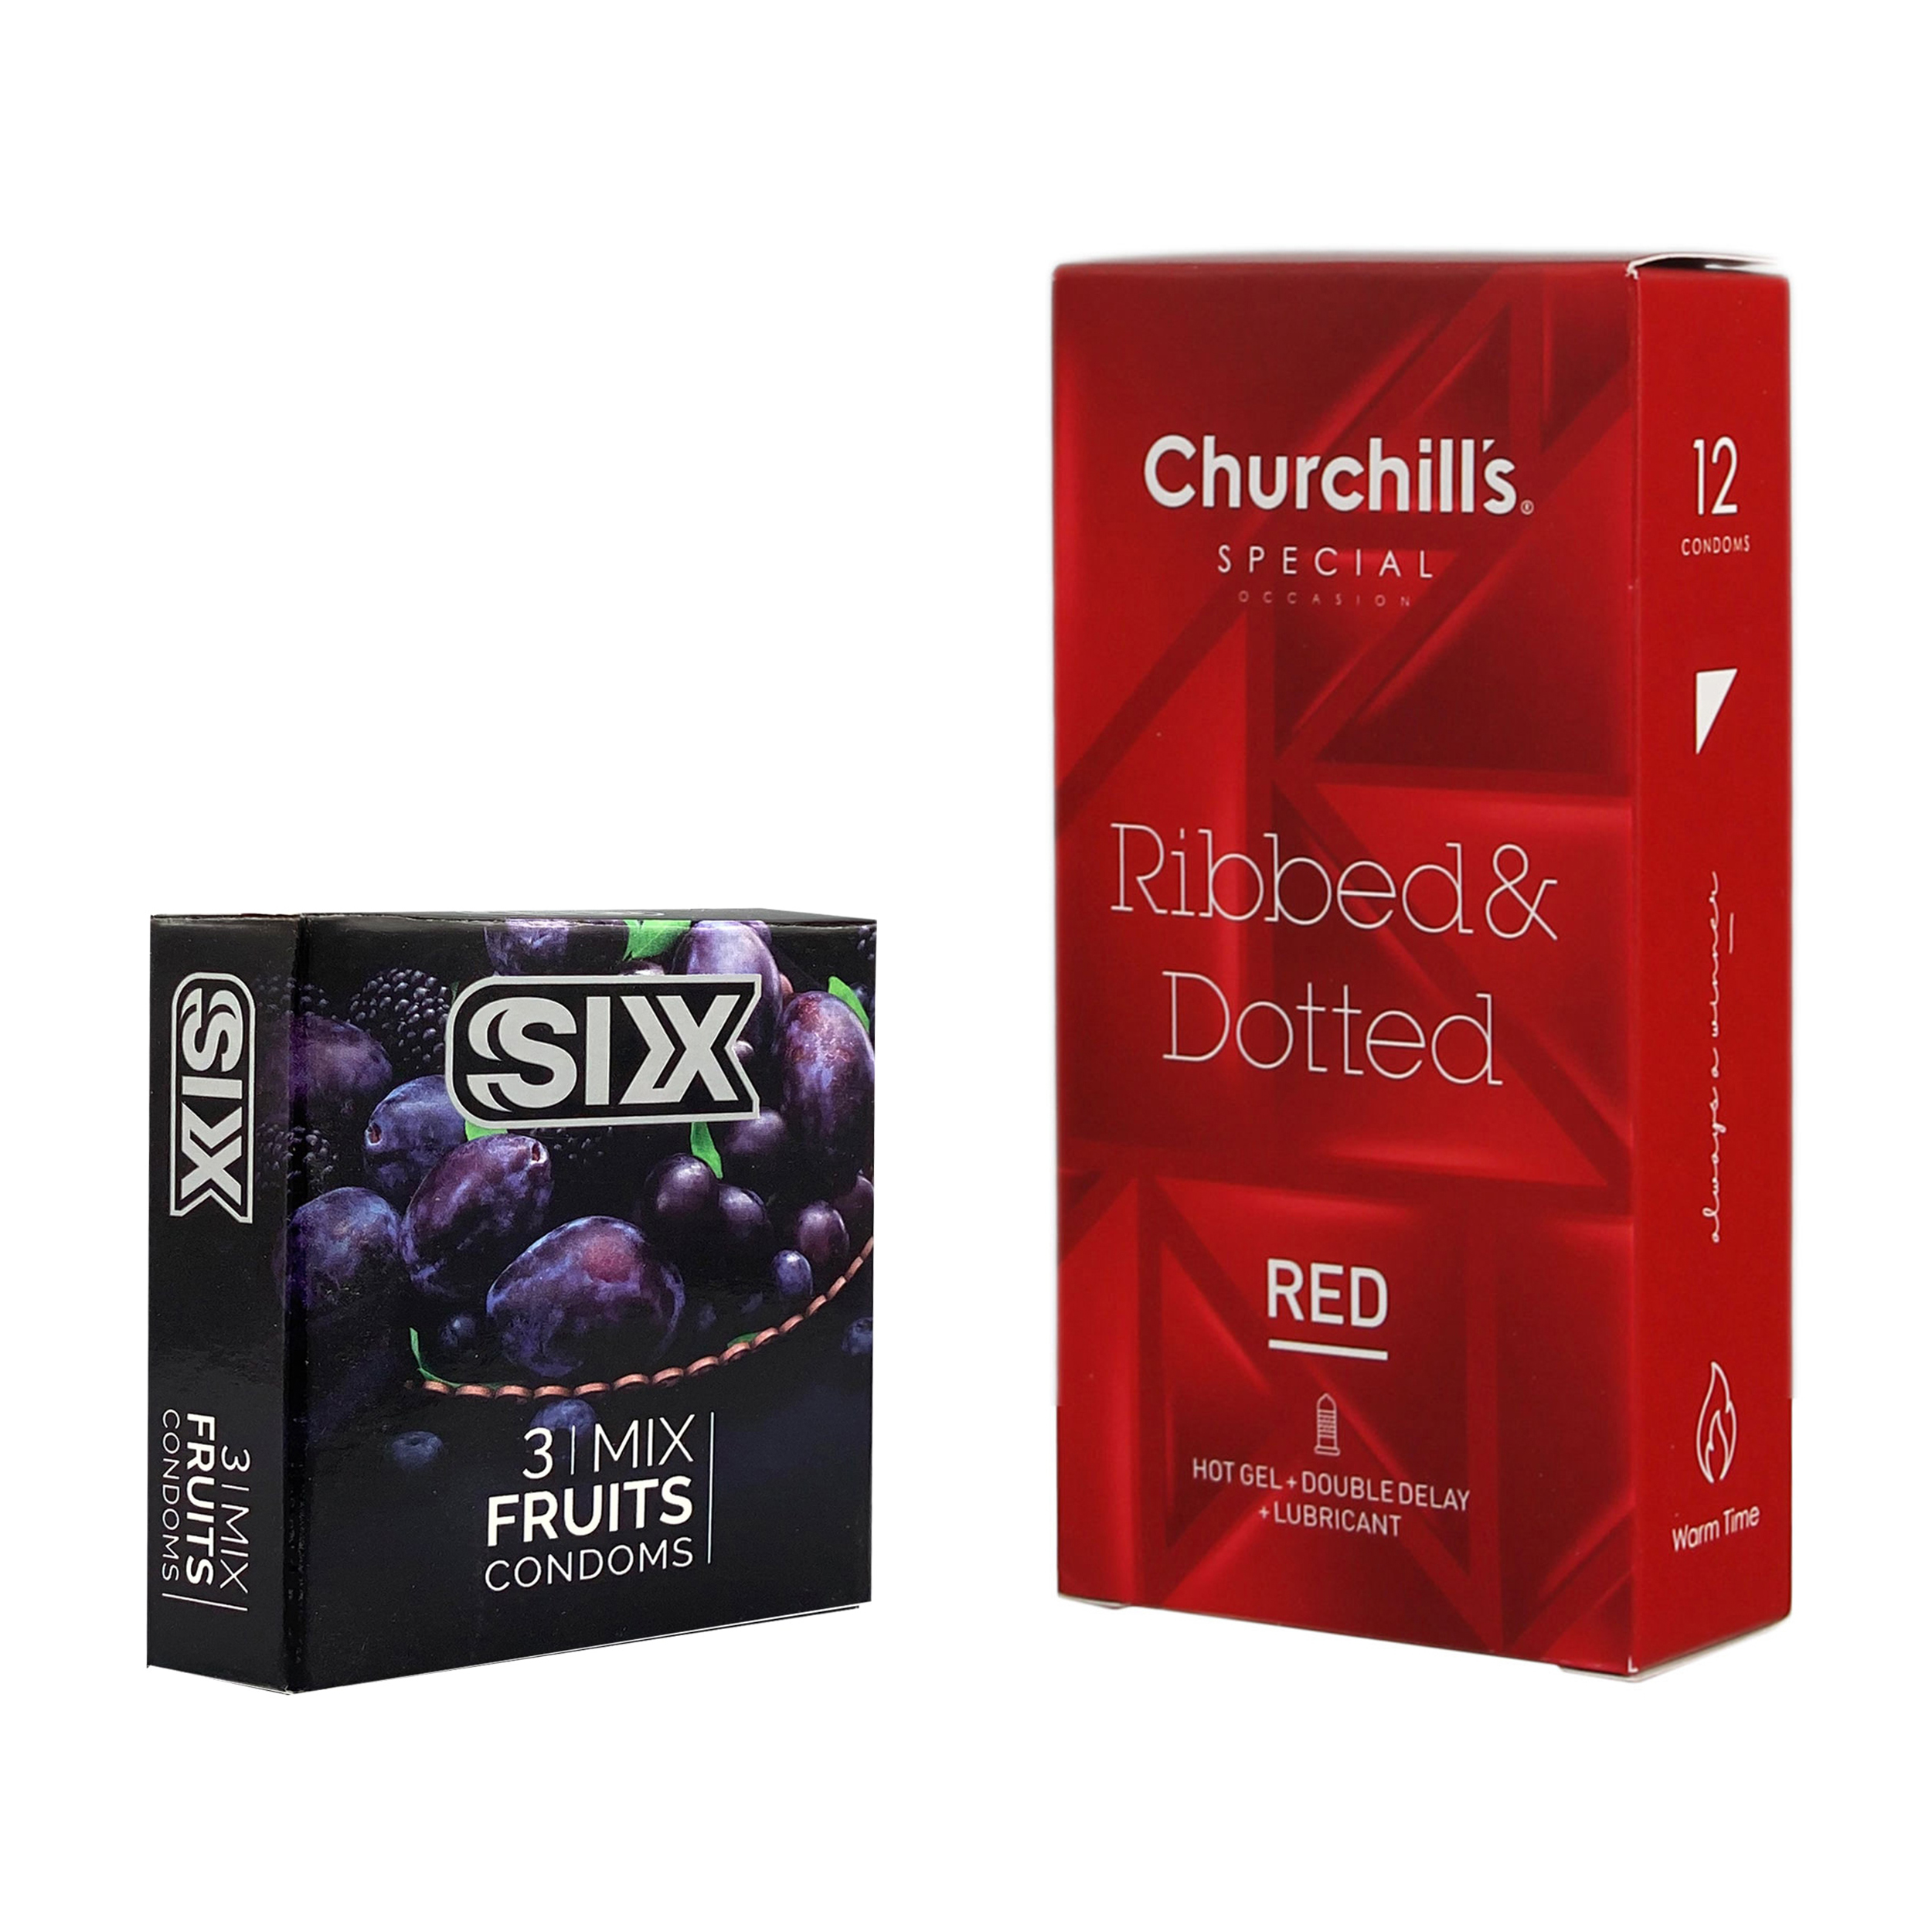 کاندوم چرچیلز مدل Ribbed & Dotted Red بسته 12 عددی به همراه کاندوم سیکس مدل میوه ای بسته 3 عددی 